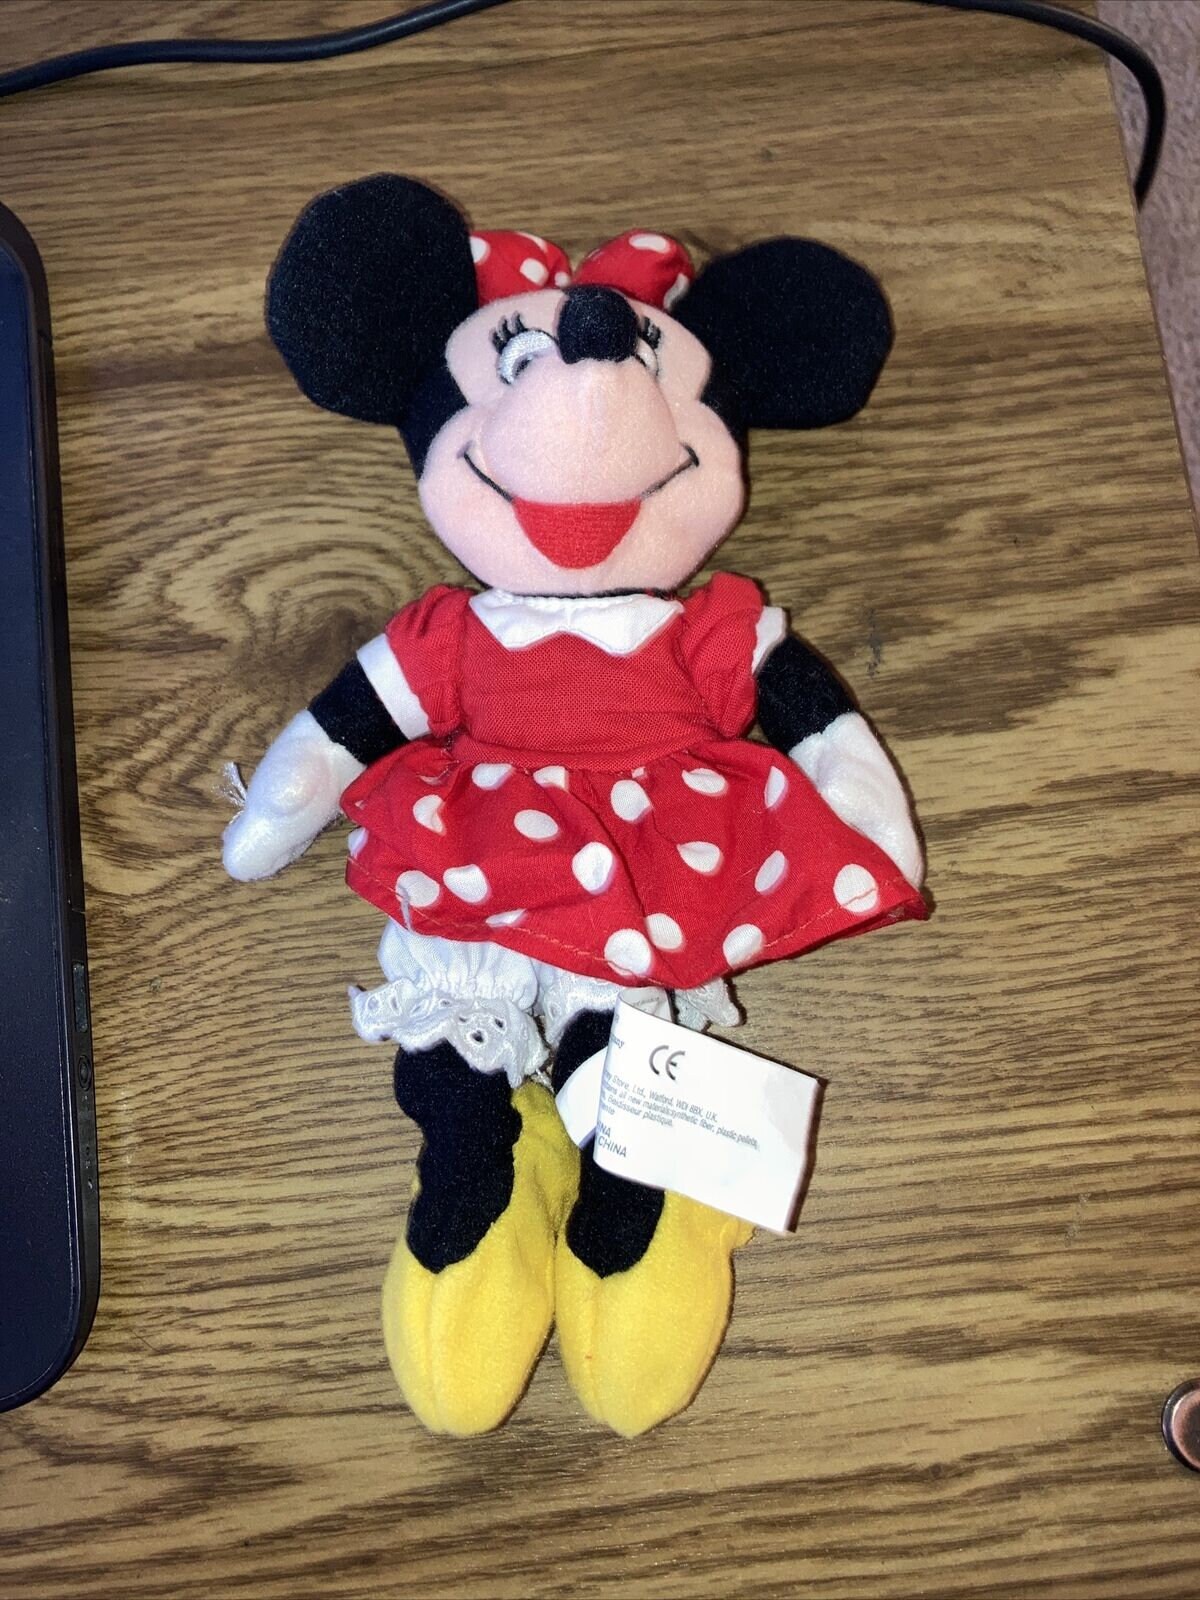 Disney Store Peluche Minnie Mouse de Taille Moyenne, 45 cm / 17,  Personnage Iconique en Peluche en Robe Rose à Pois, nœud et  caractéristiques emblématiques brodées, Convient à Tous Les âges. 